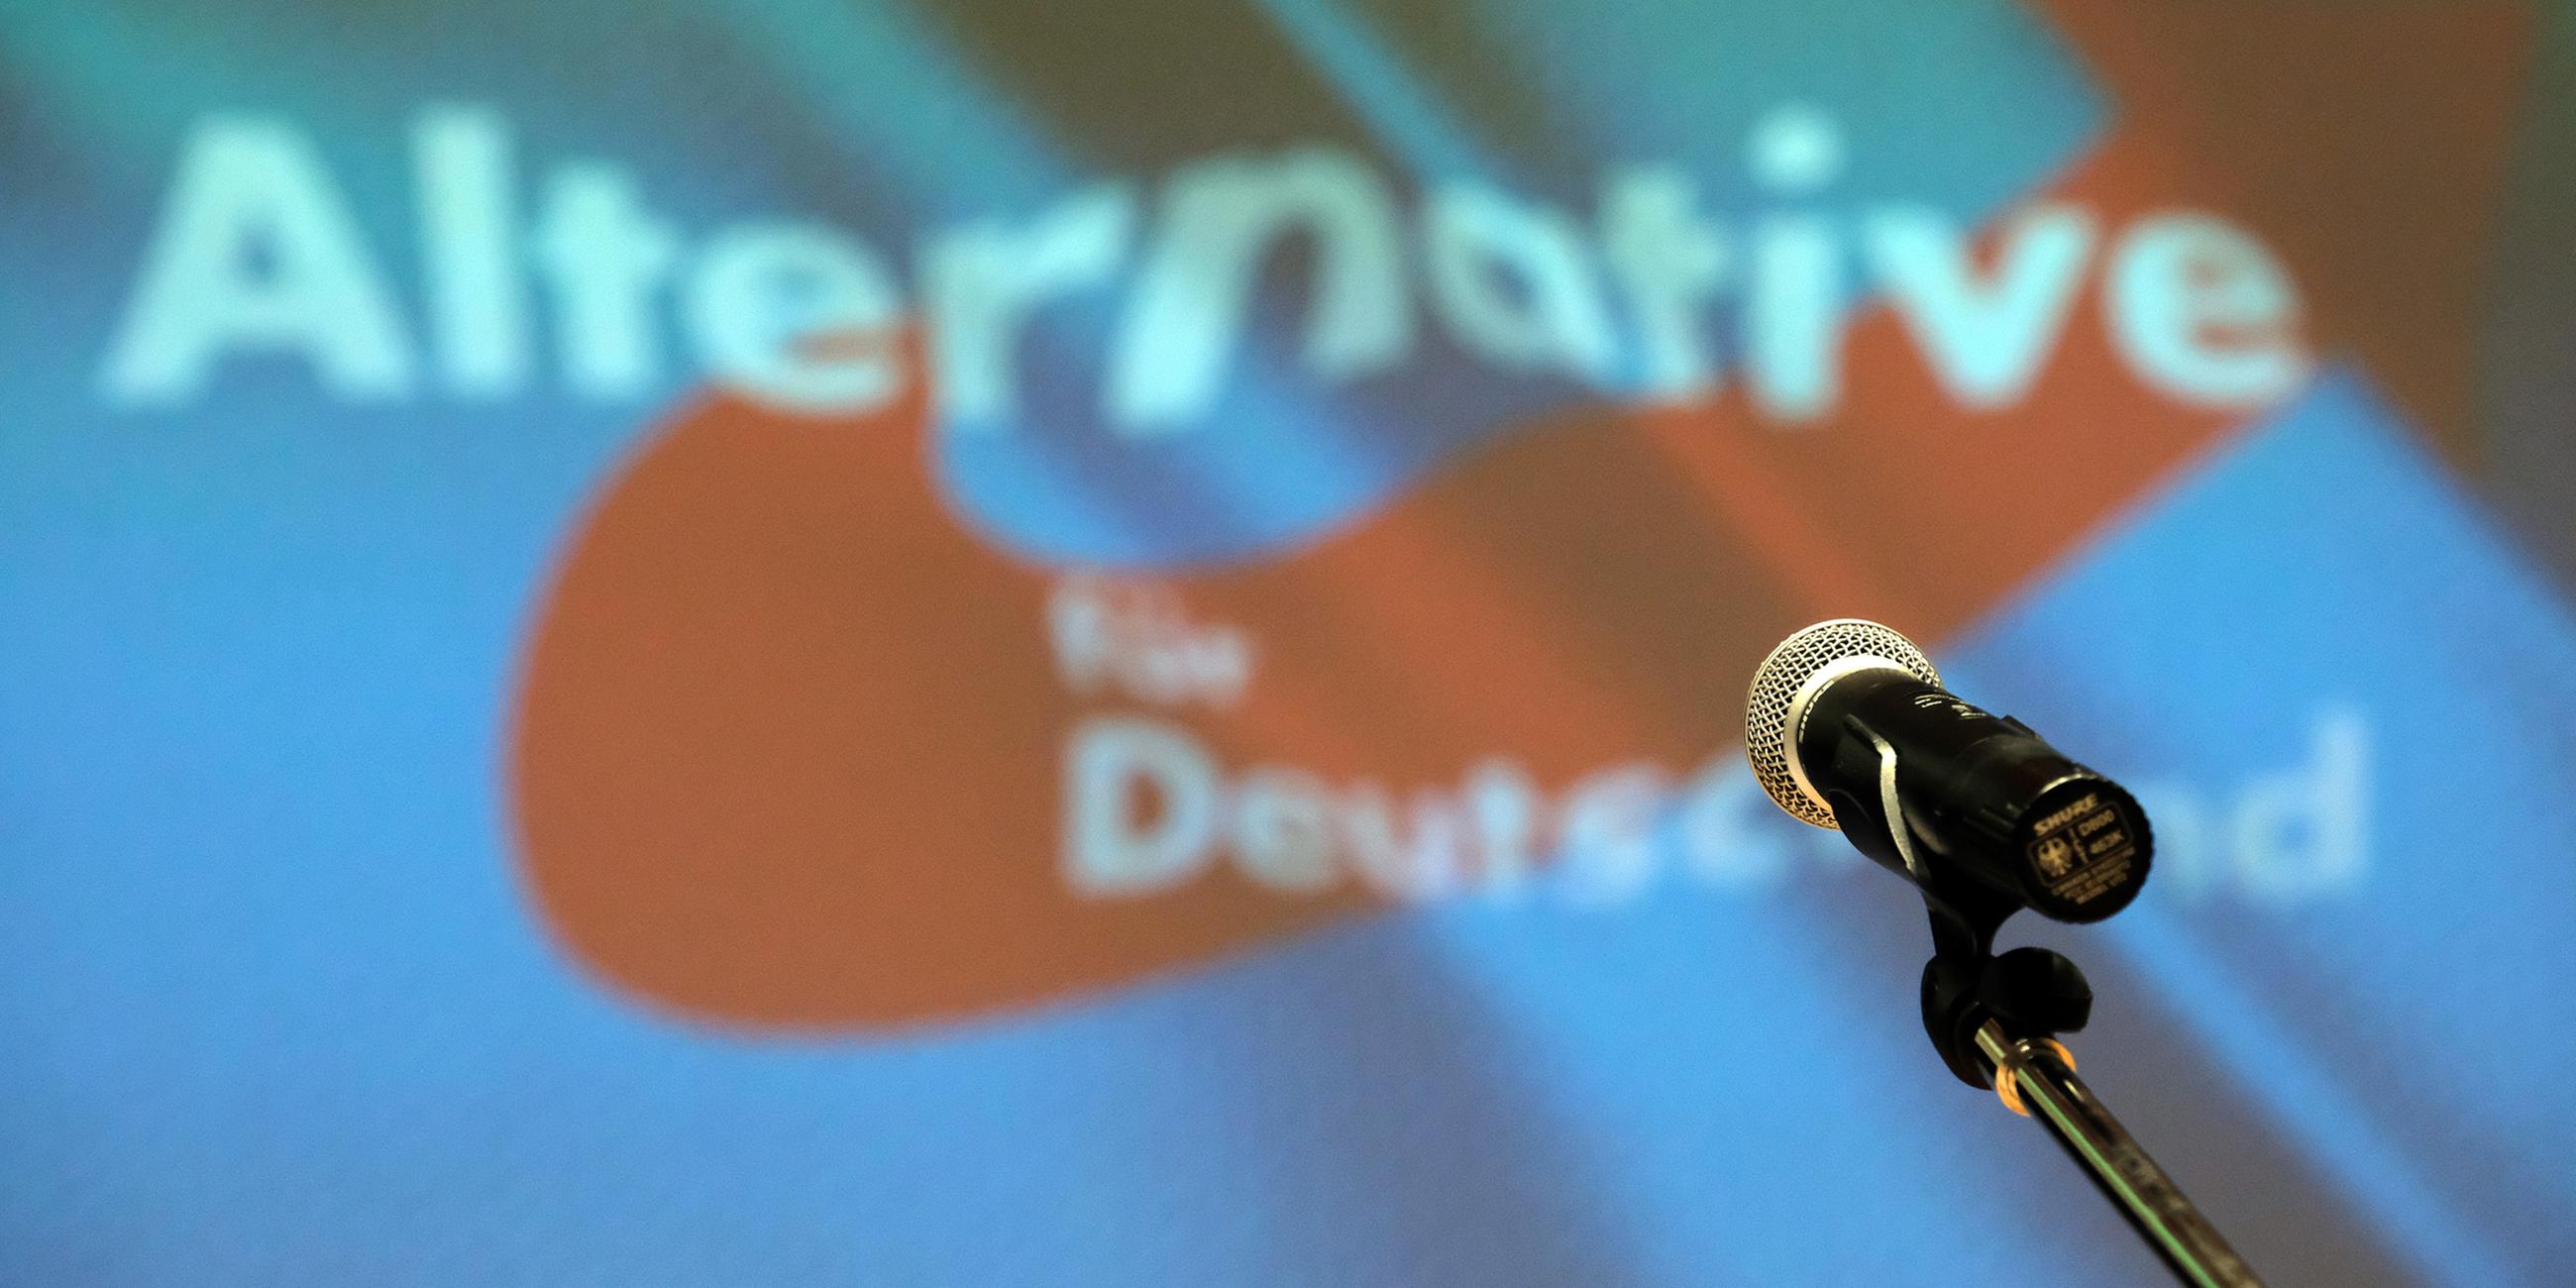 Archiv: Ein Mikrofon steht bei einem Parteitag der AfD auf der Bühne vor dem Partei-Logo